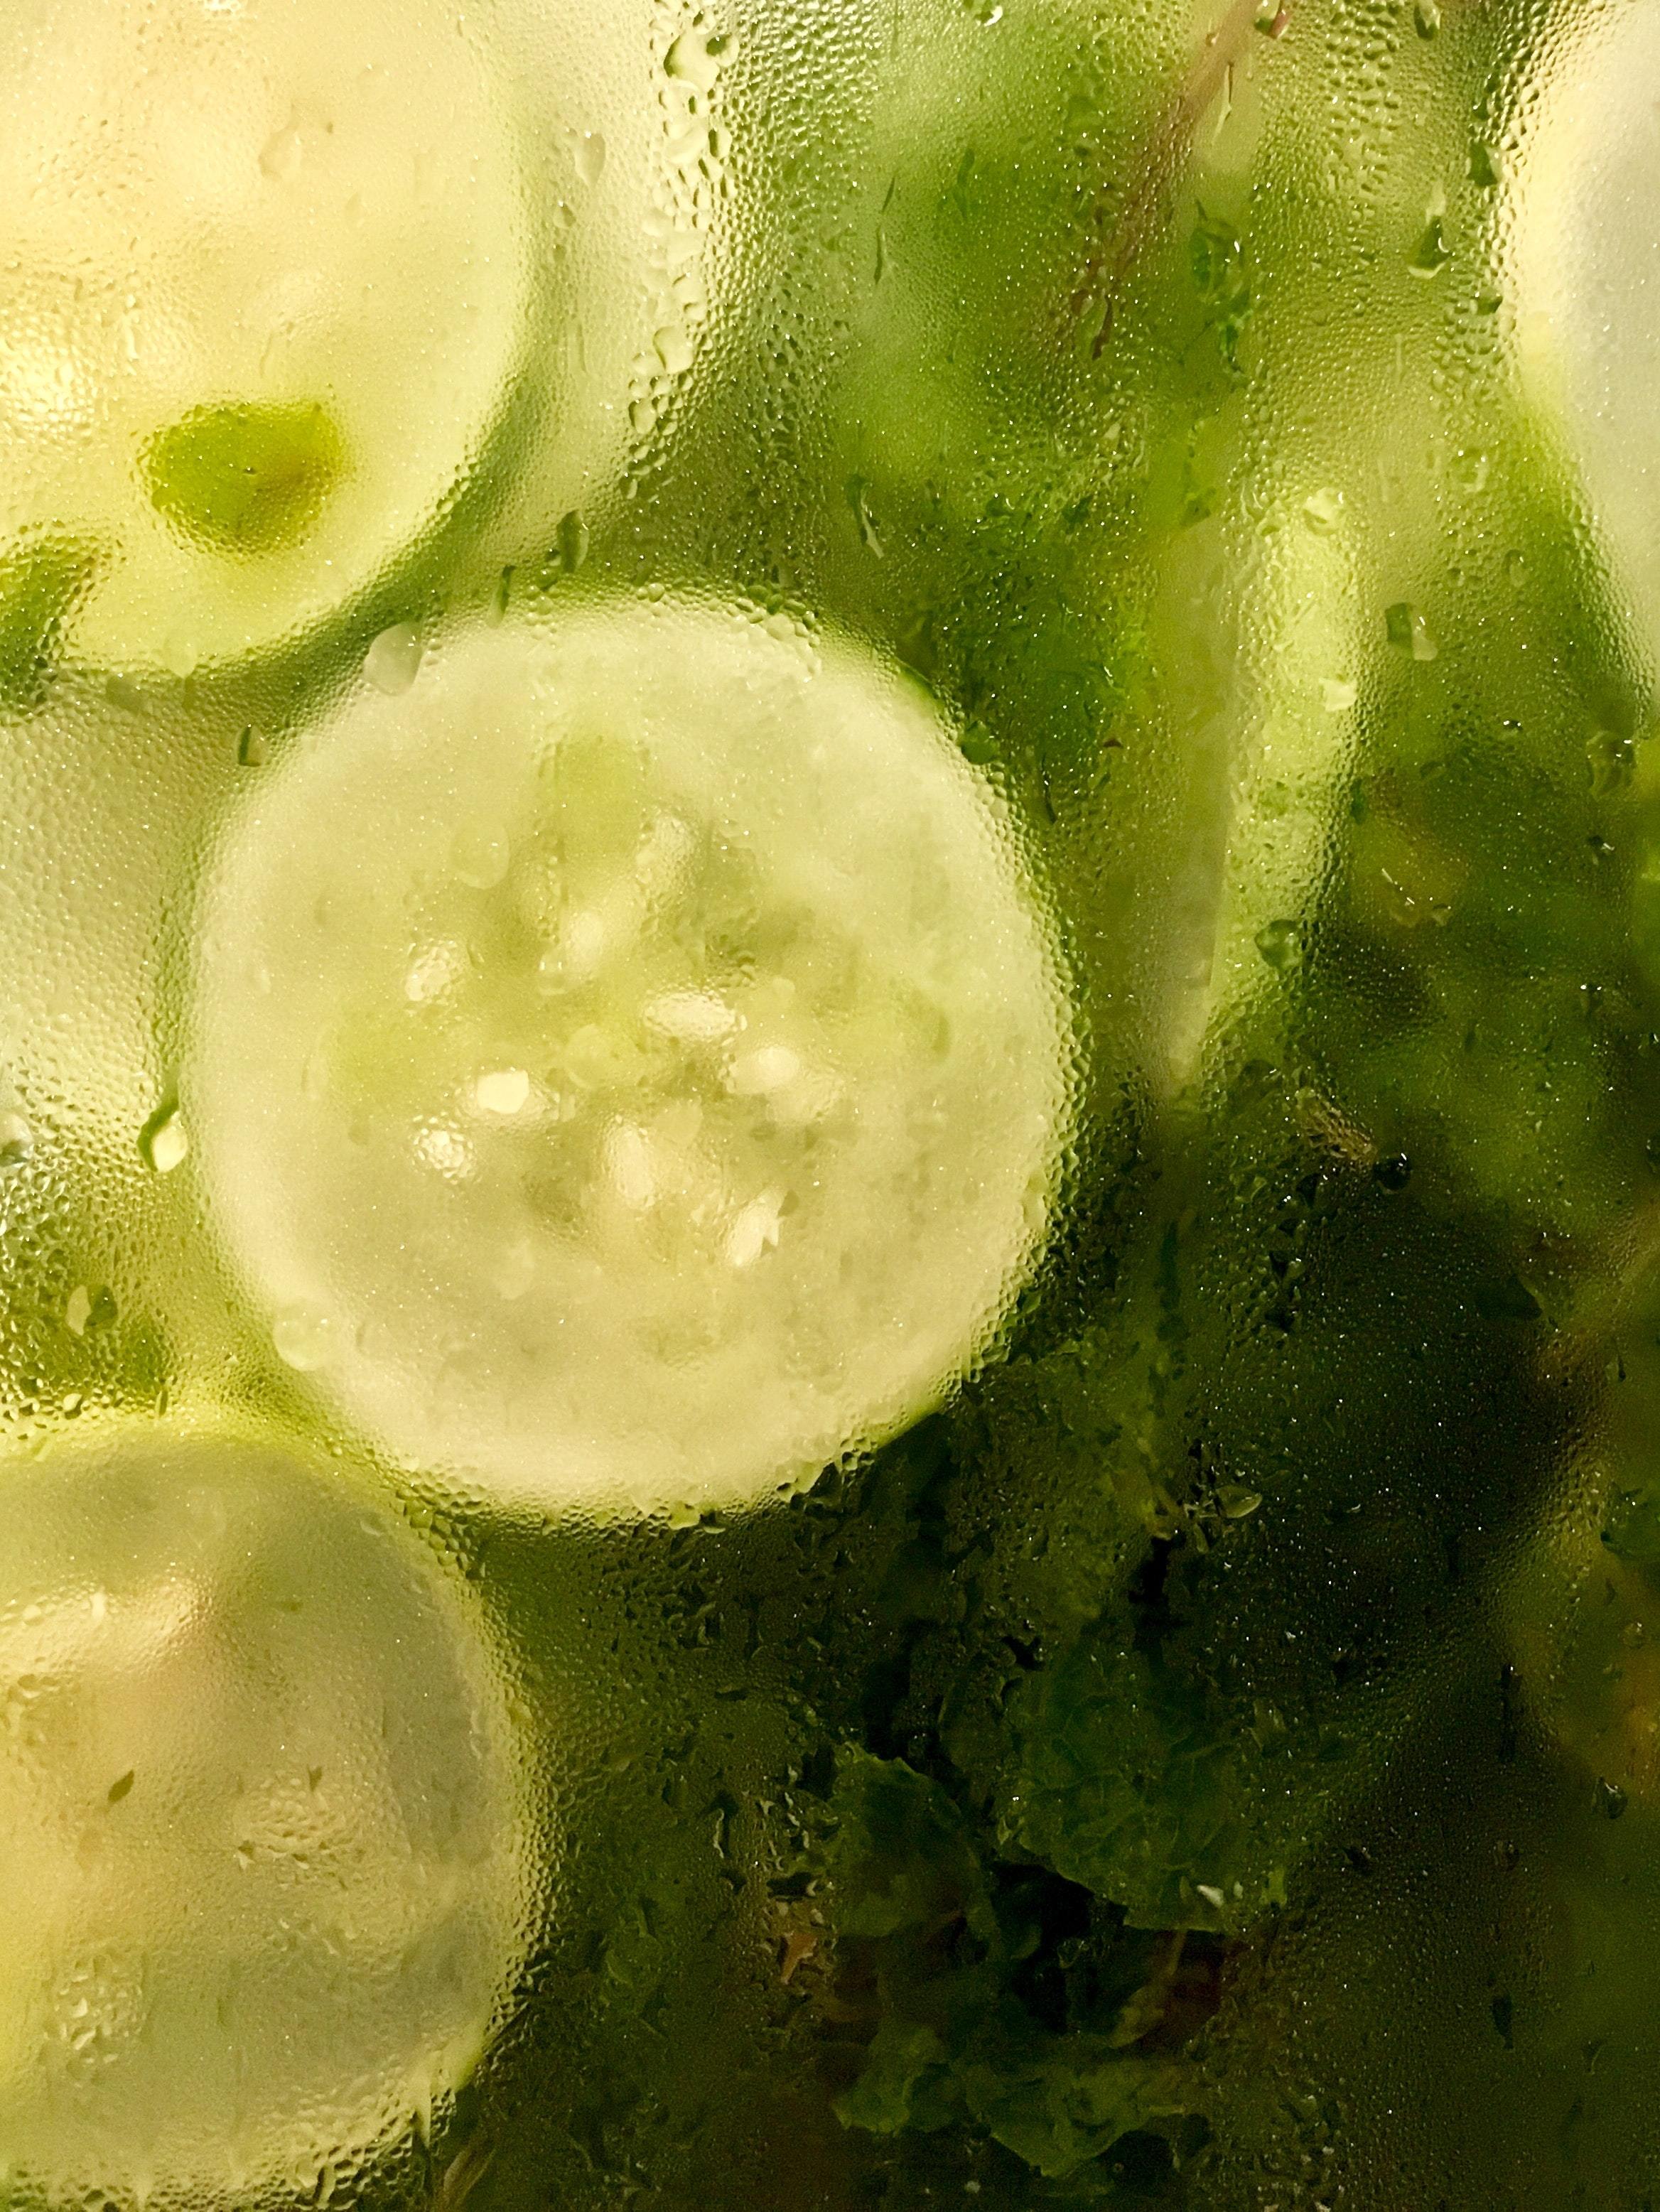 Fresh Linen & Cucumber Fragrance Oil 10ml – SCENTA